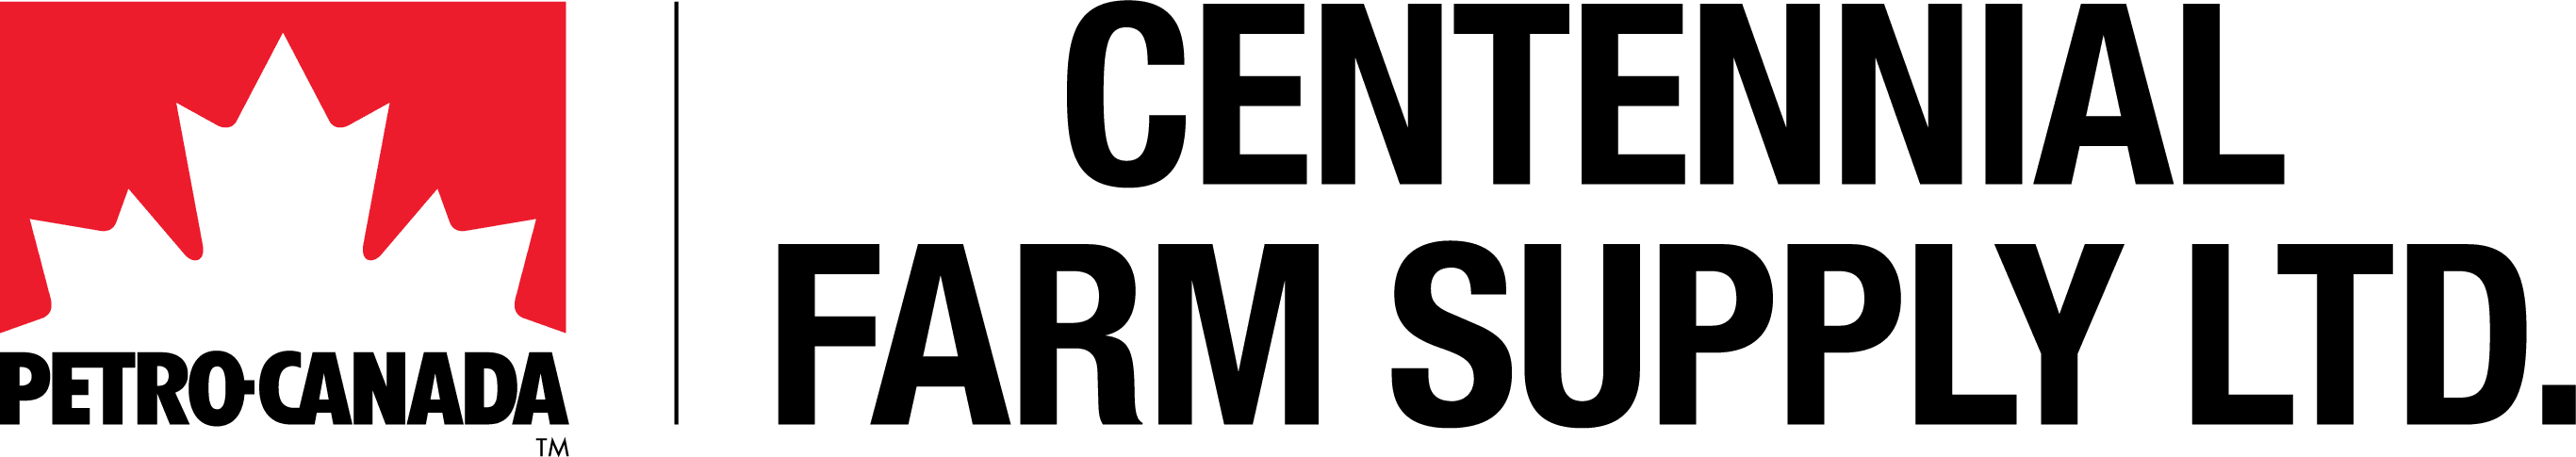 Centennial Farm Supply | A Petro-Canada Marketer